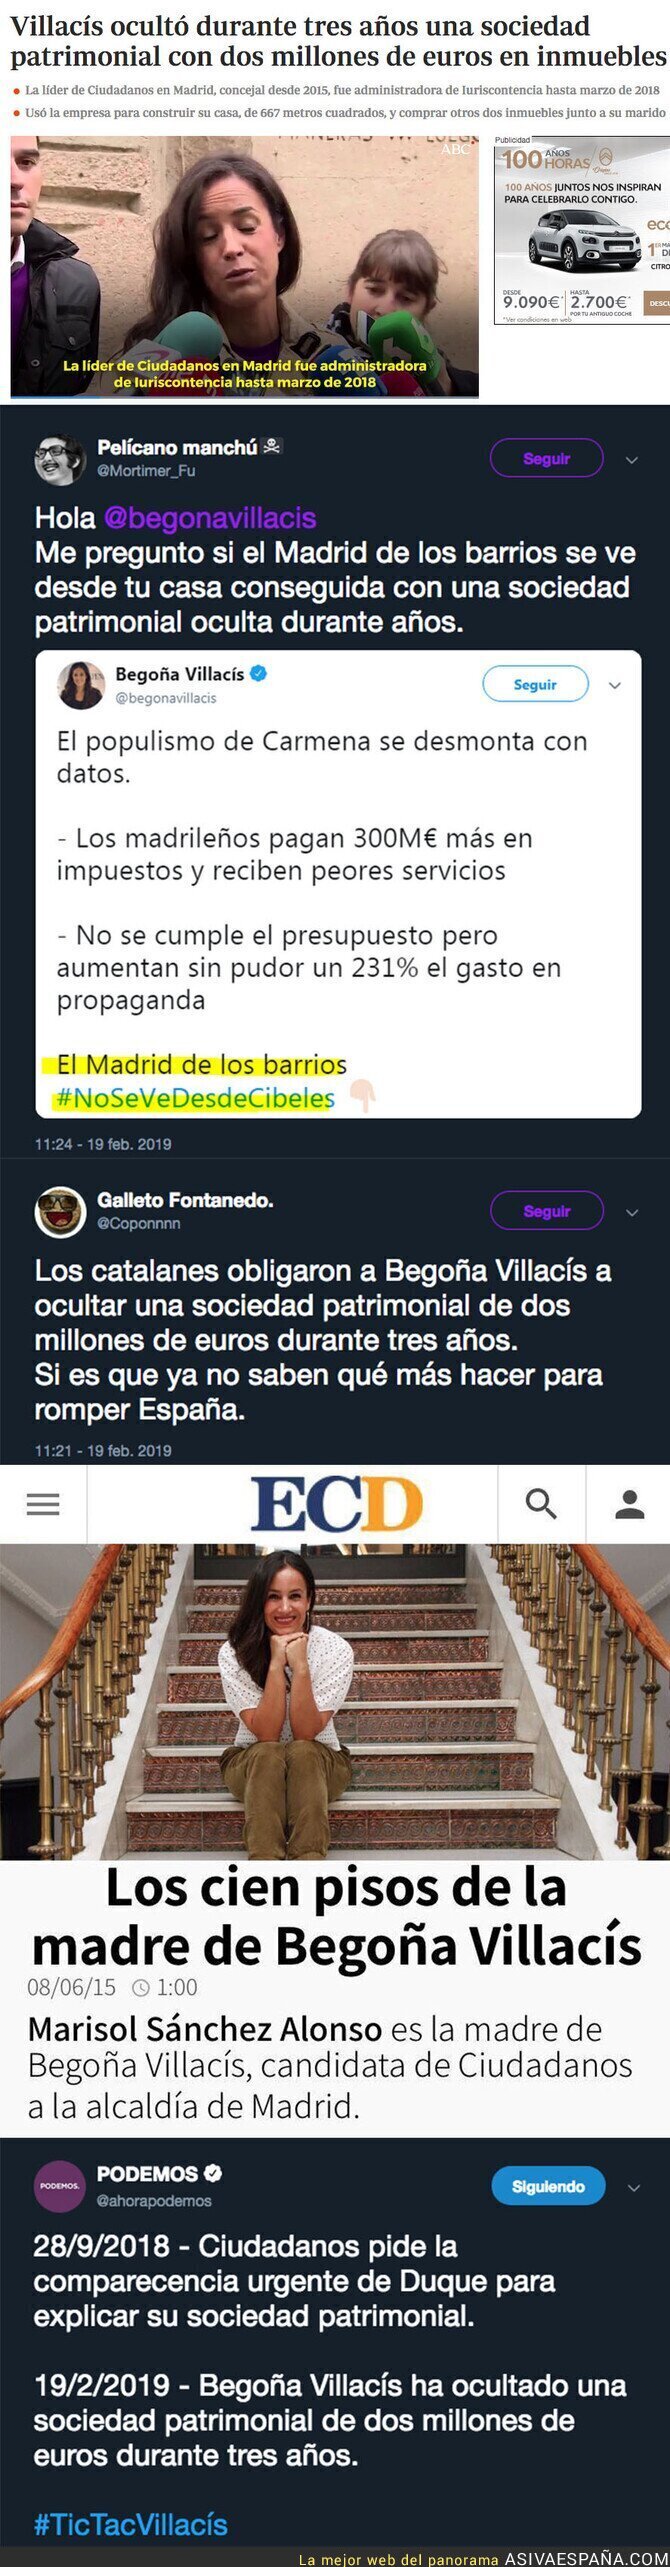 El gran escándalo de Begoña Villacís del que no te informará Antena 3 ni Telecinco sobre sus bienes de inmuebles